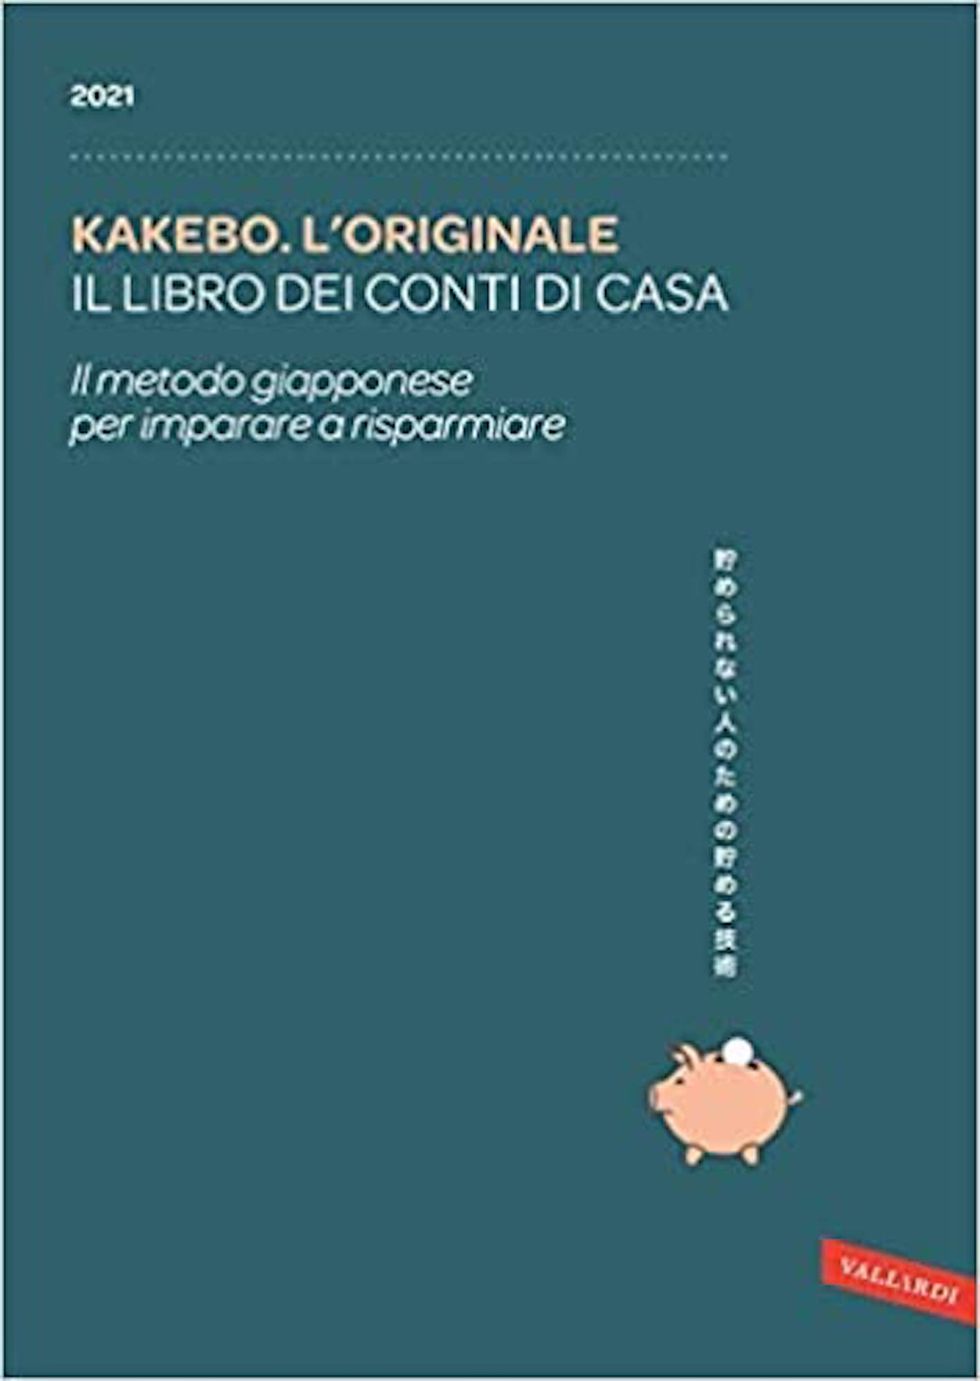 kakebo l’originale 2021 il libro dei conti di casa